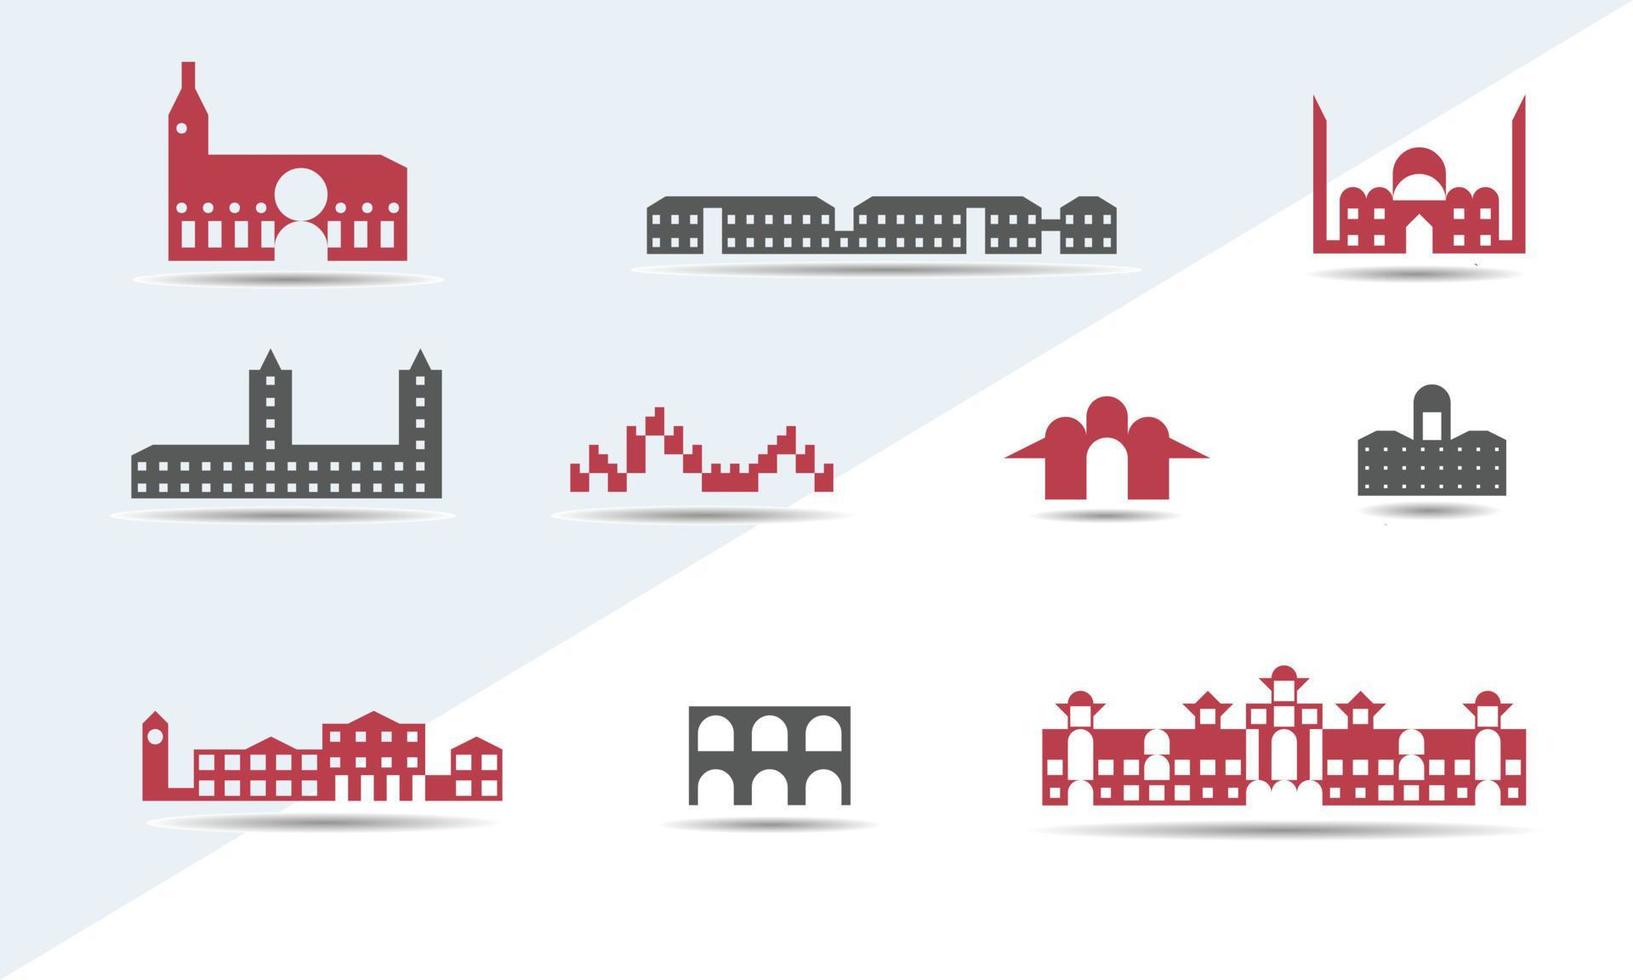 pequeña ciudad conjunto de casas y residencias sobre un fondo blanco, ilustración de plantilla vectorial vector